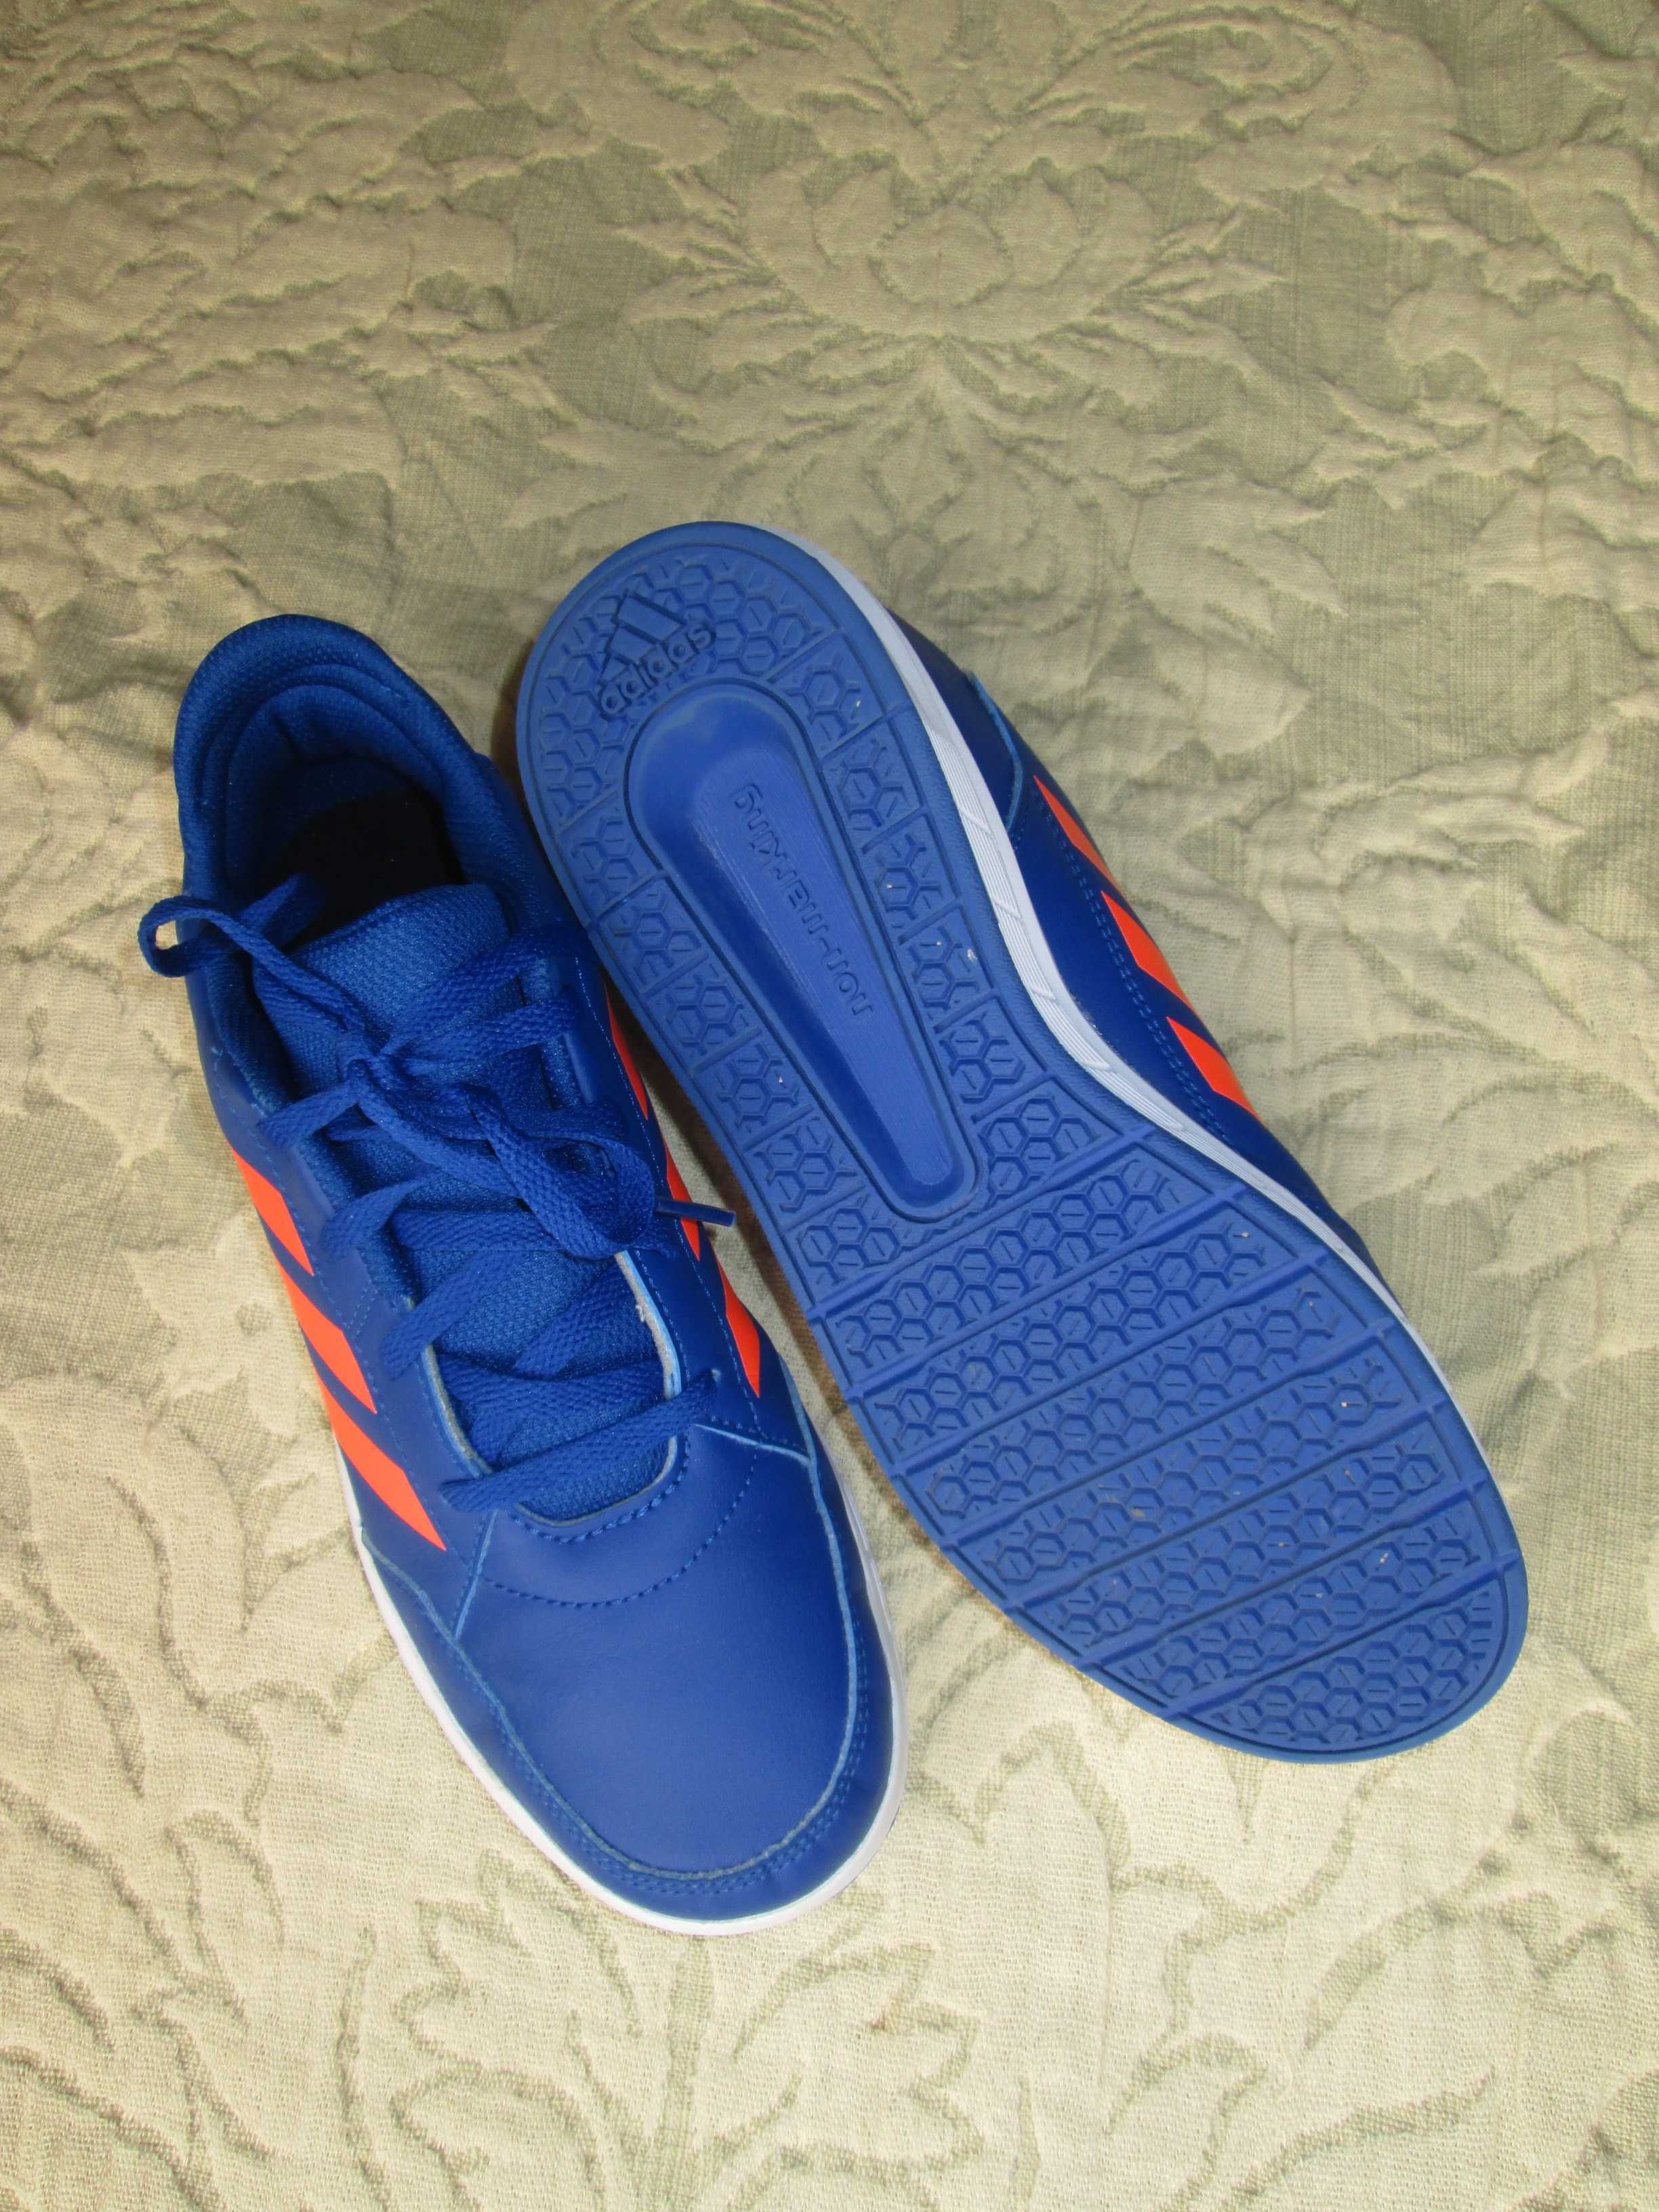 Ténis de rapaz marca  Adidas tamanho 38  cor azul